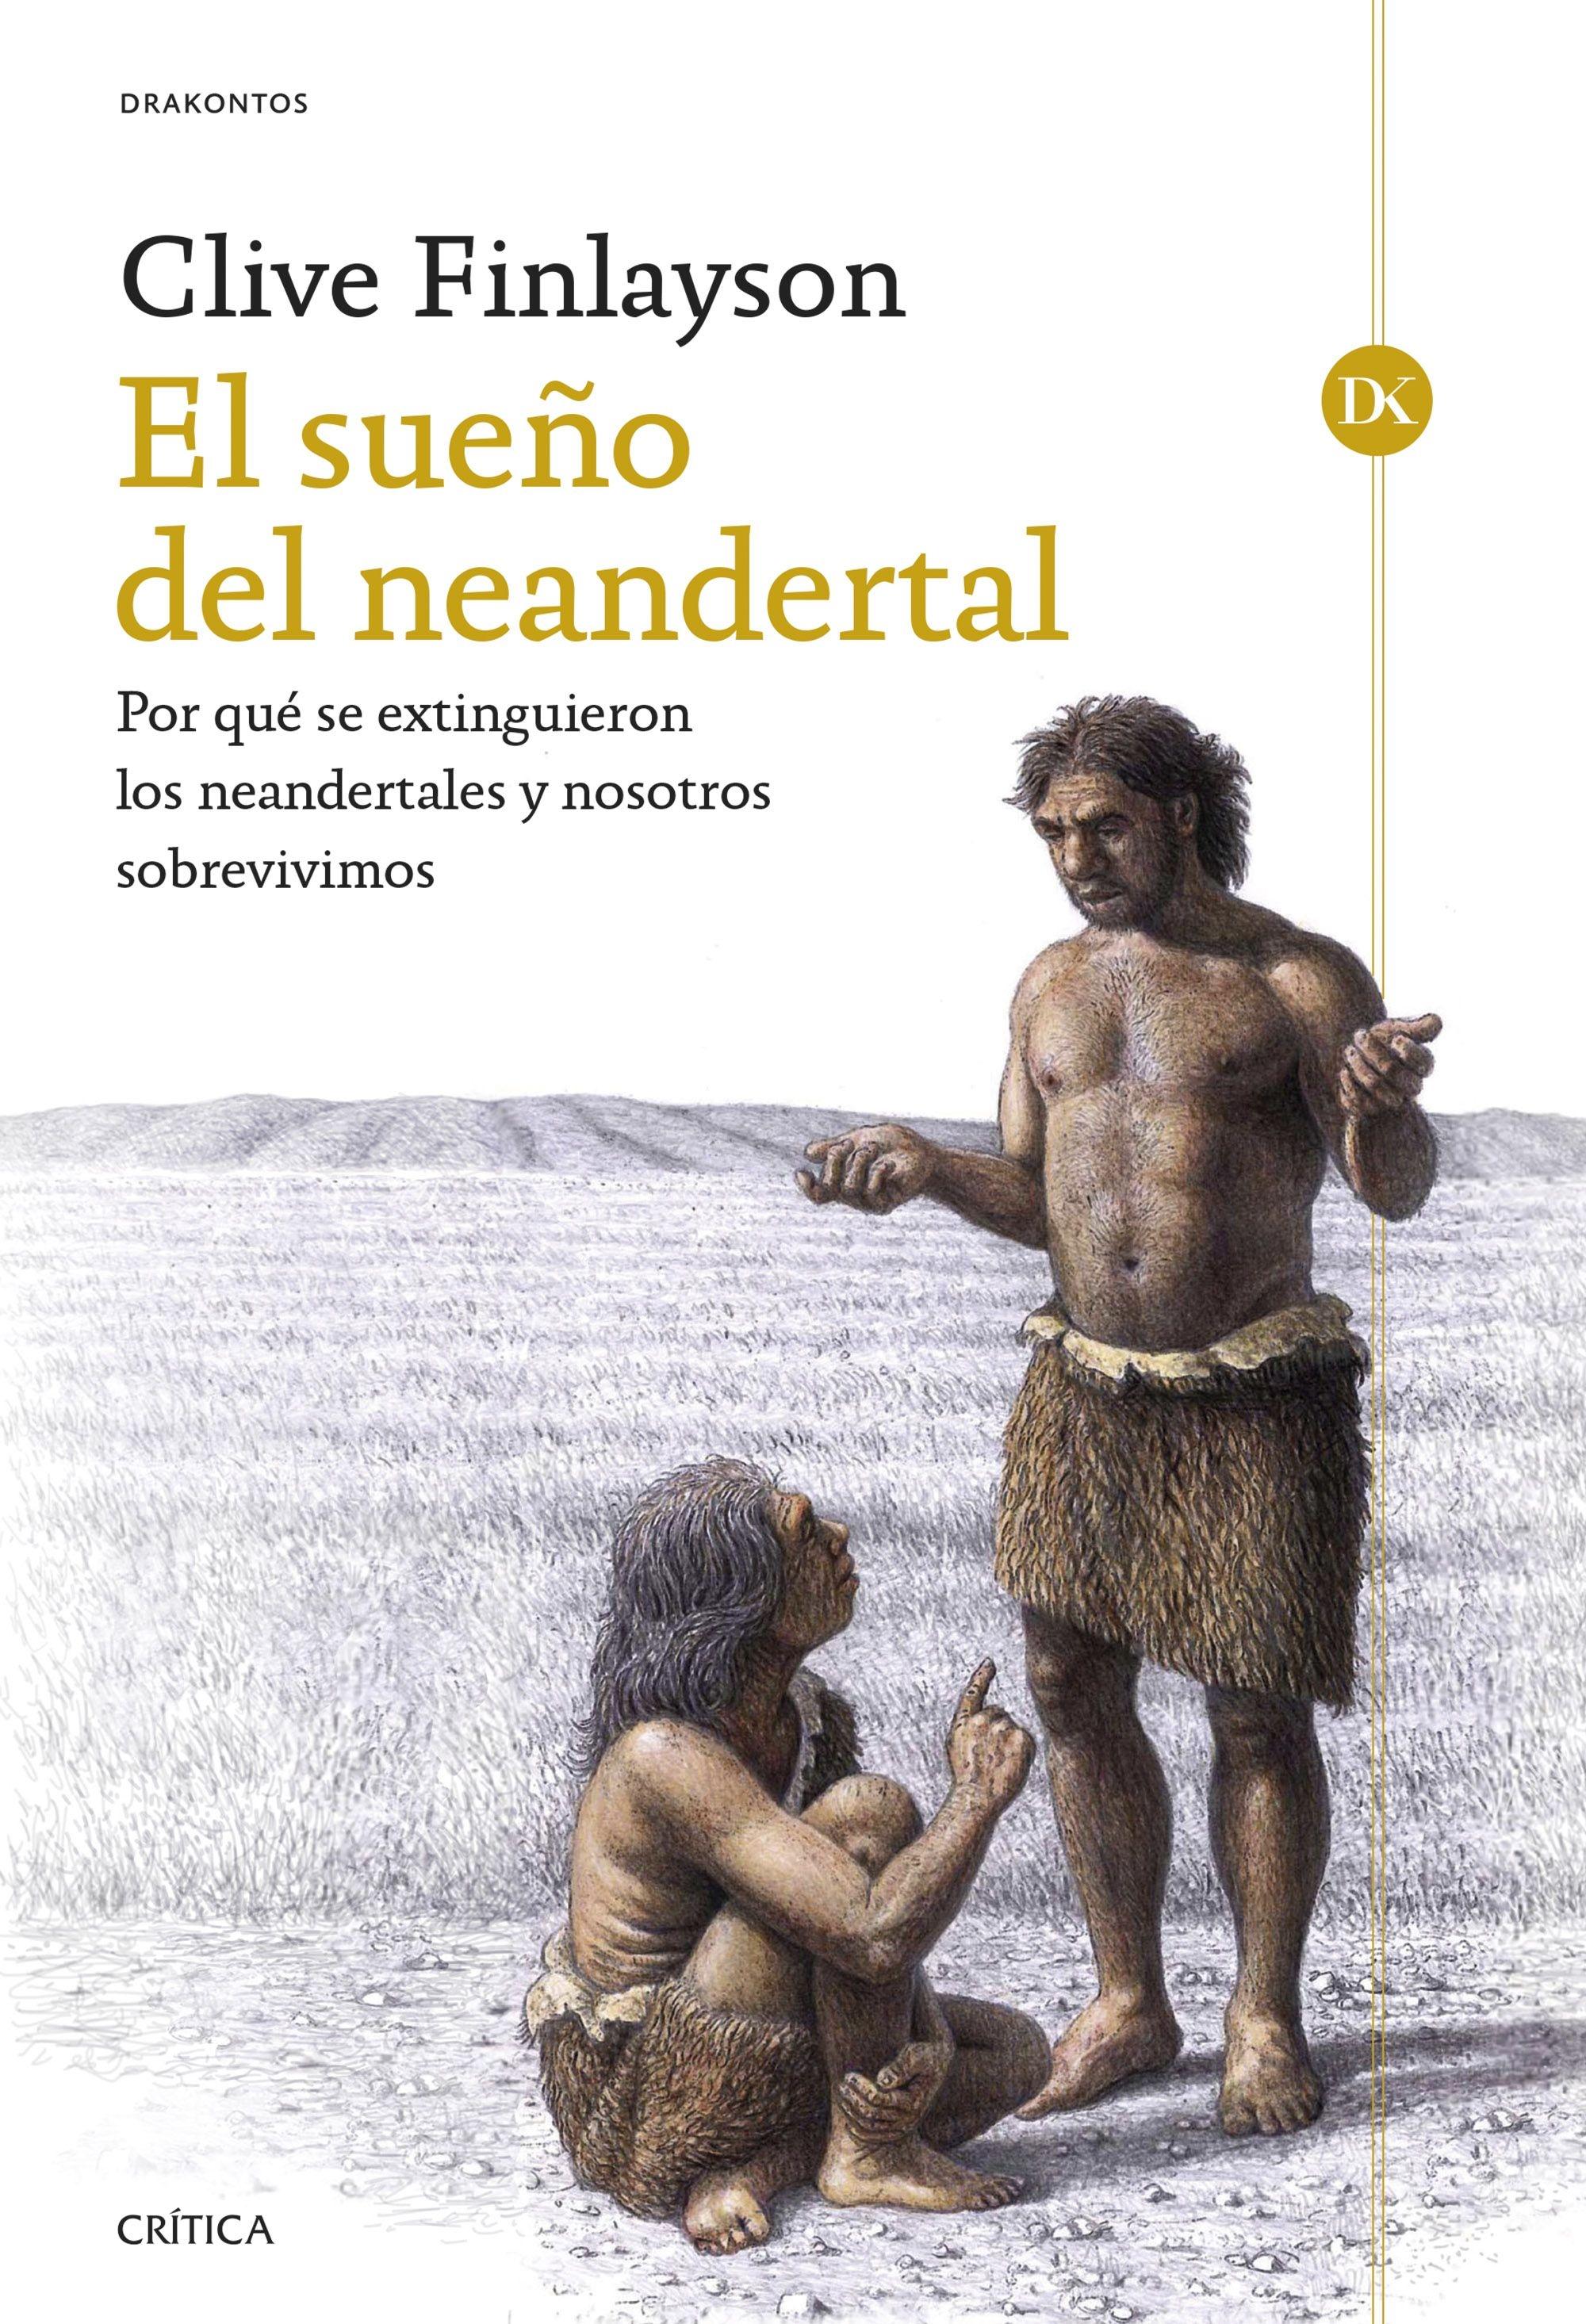 El Sueño del Neandertal "Por que se Extinguieron los Neandertales y nosotros Sobrevivimos". 